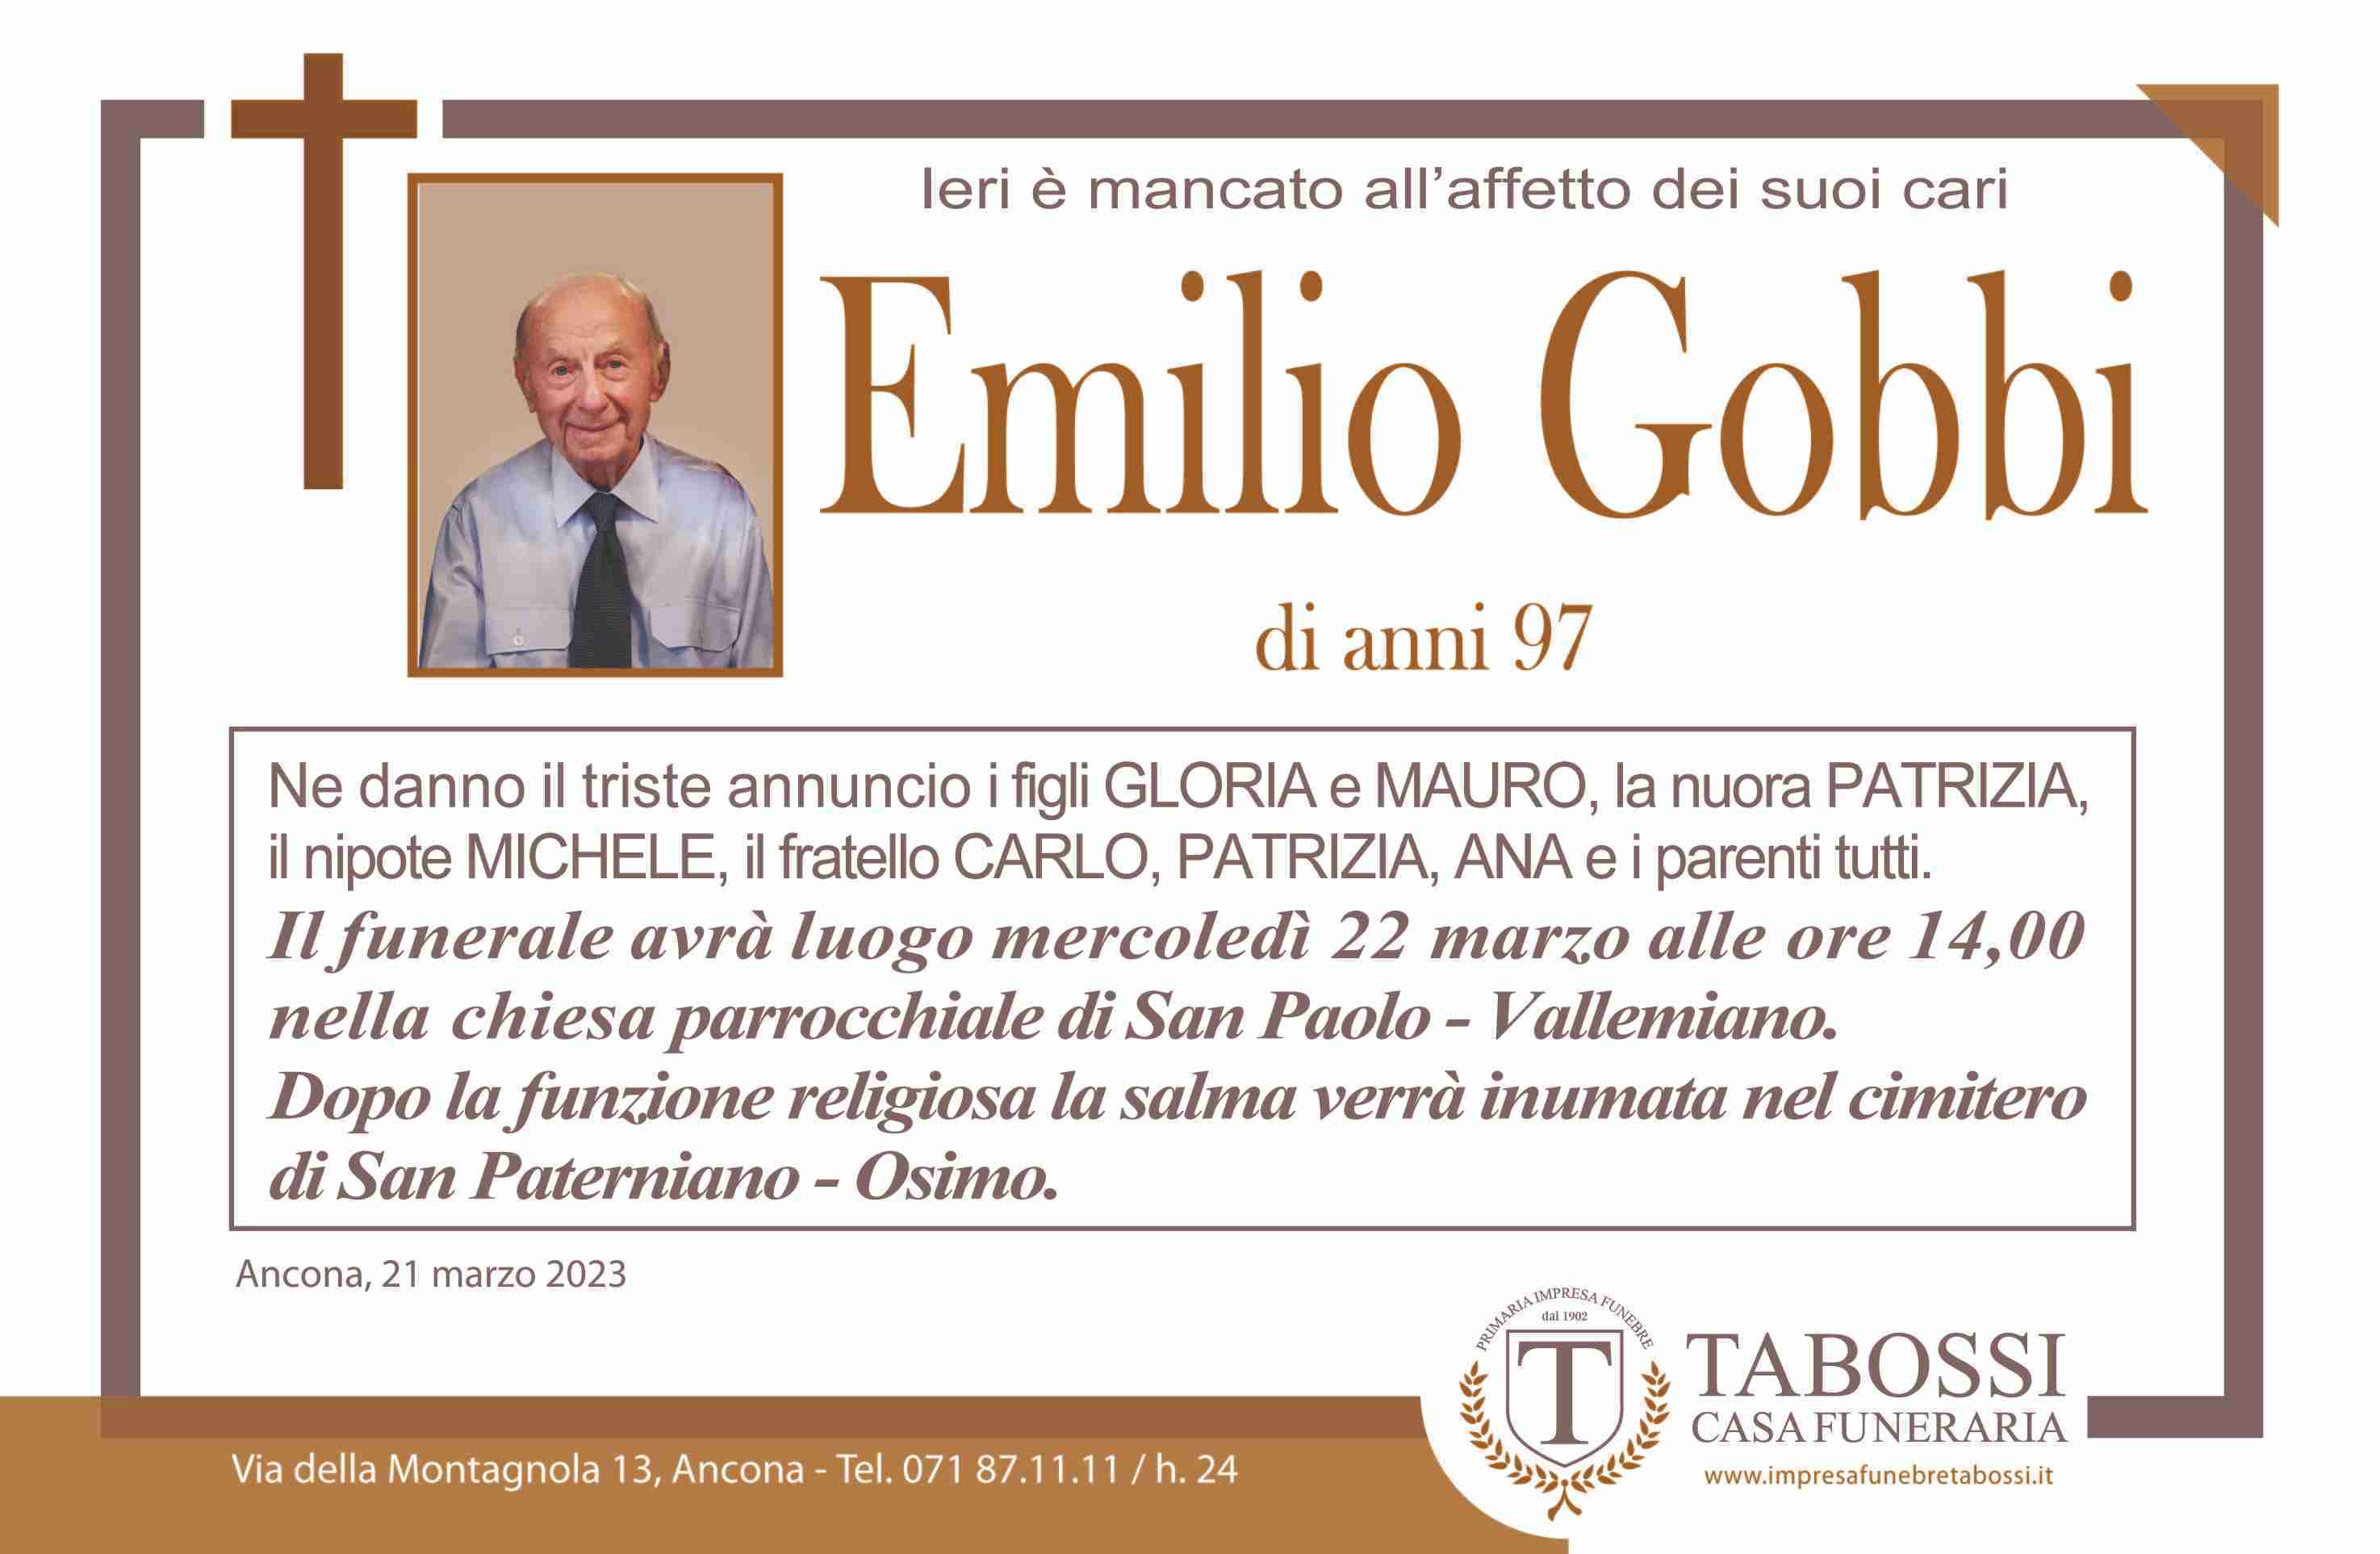 Emilio Gobbi